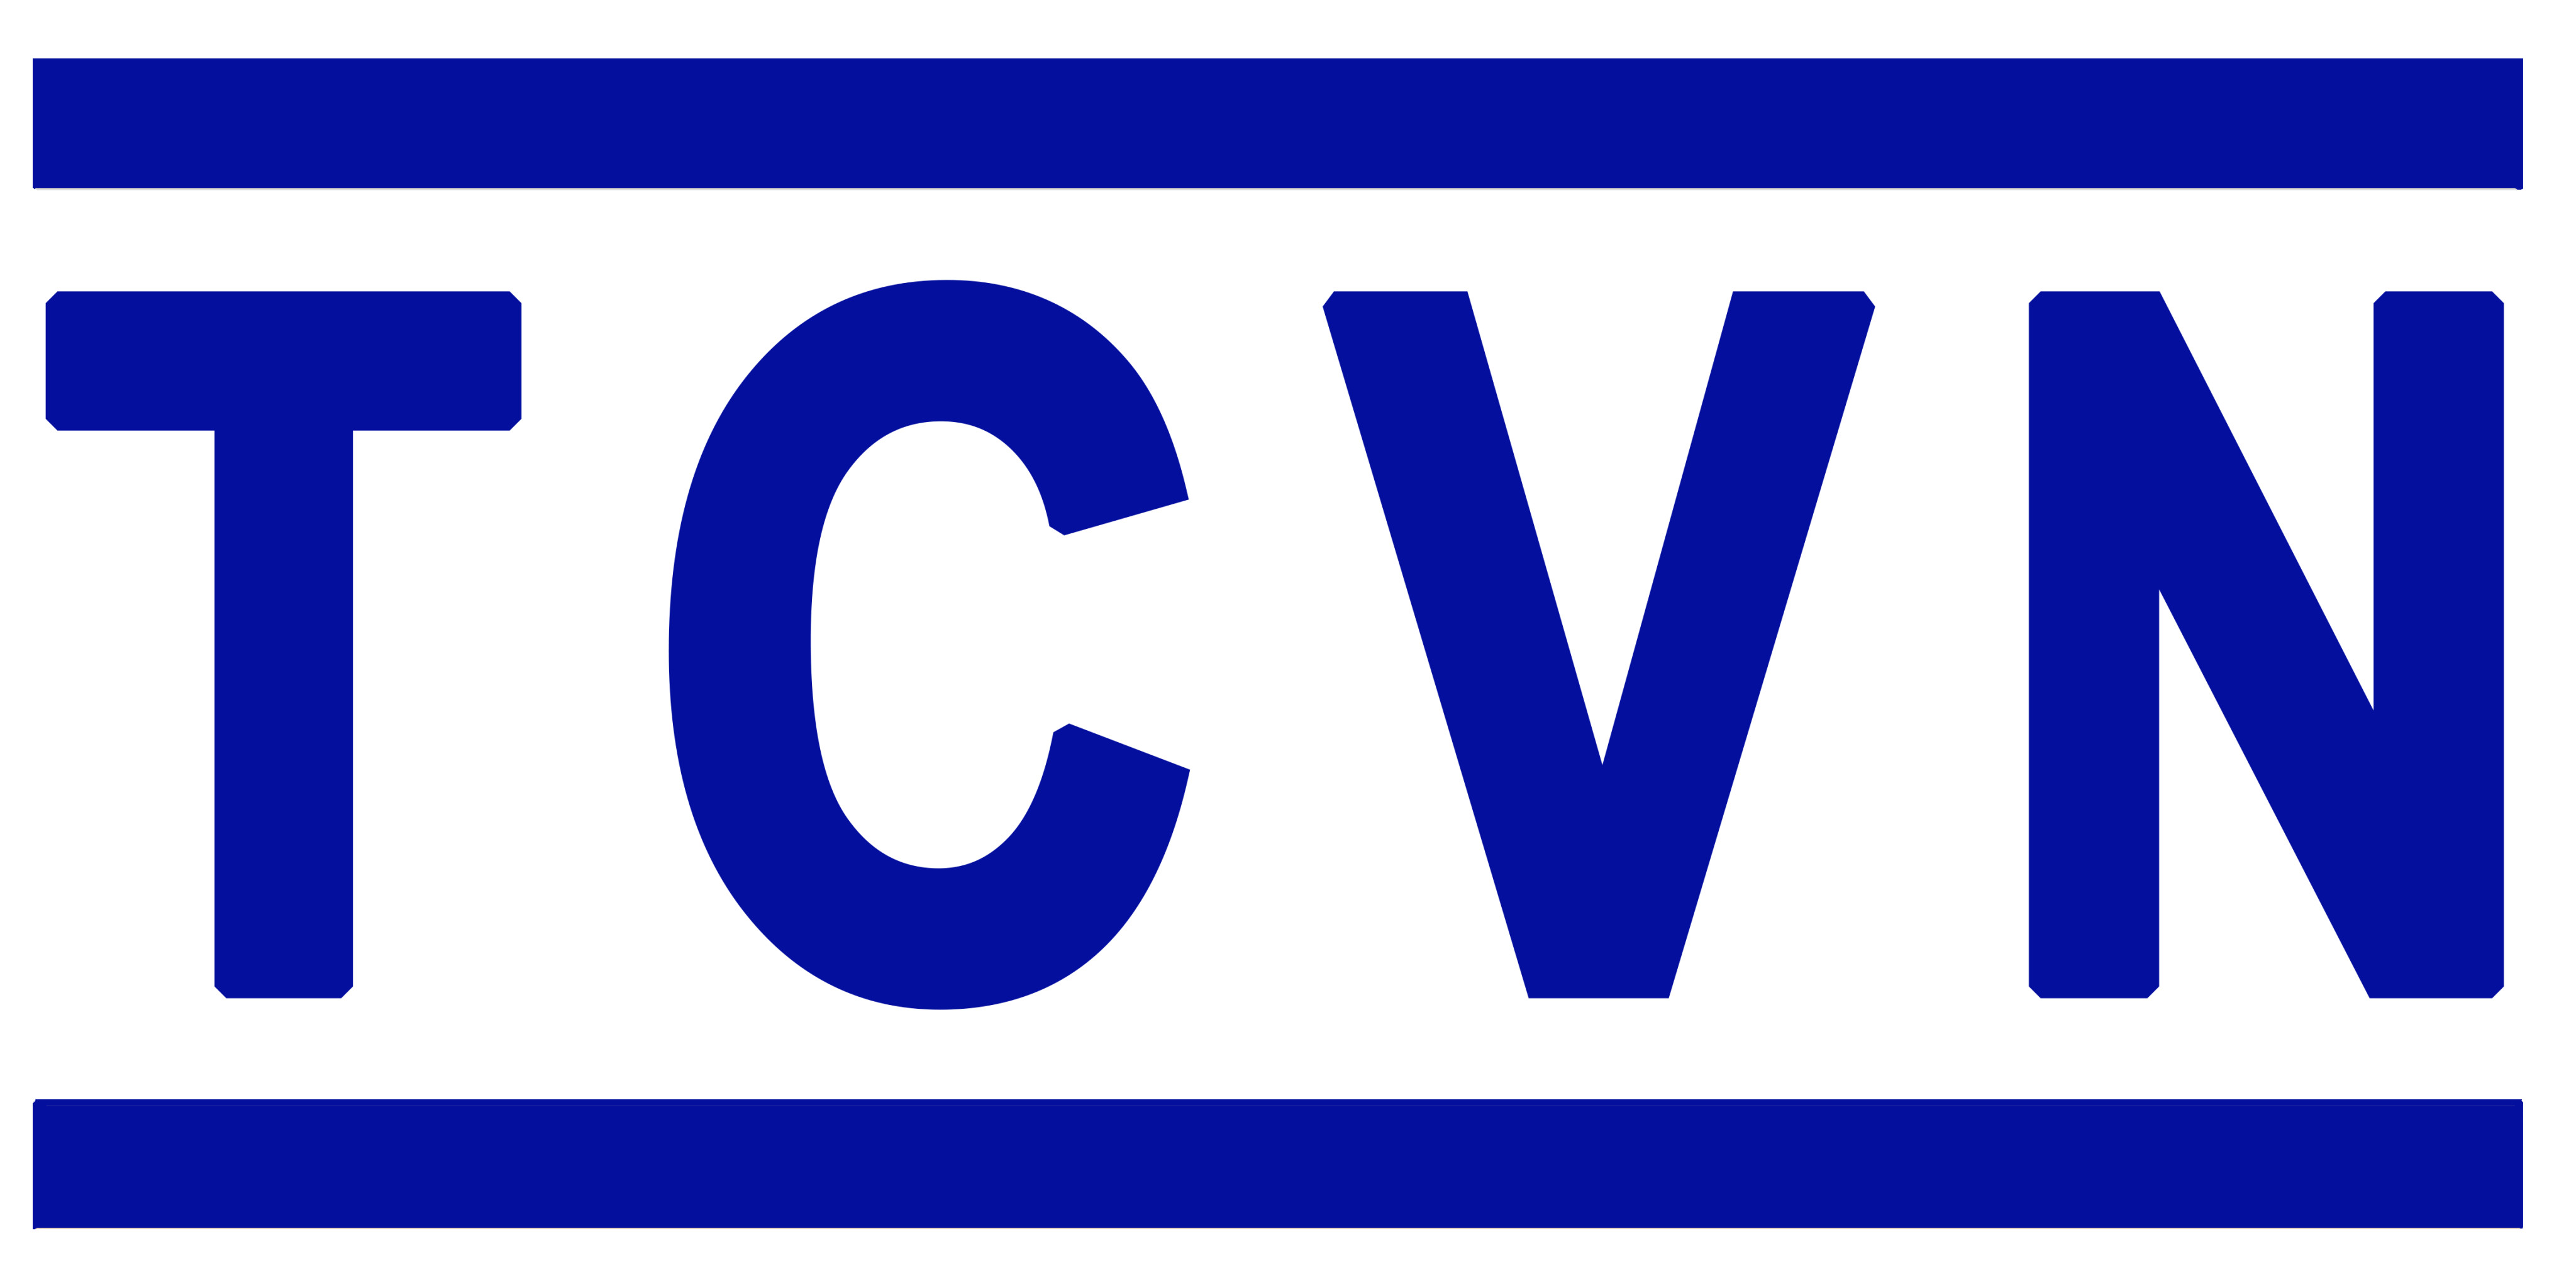 Danh mục tiêu chuẩn Quốc Gia (TCVN) công bố trong tháng 5 năm 2019